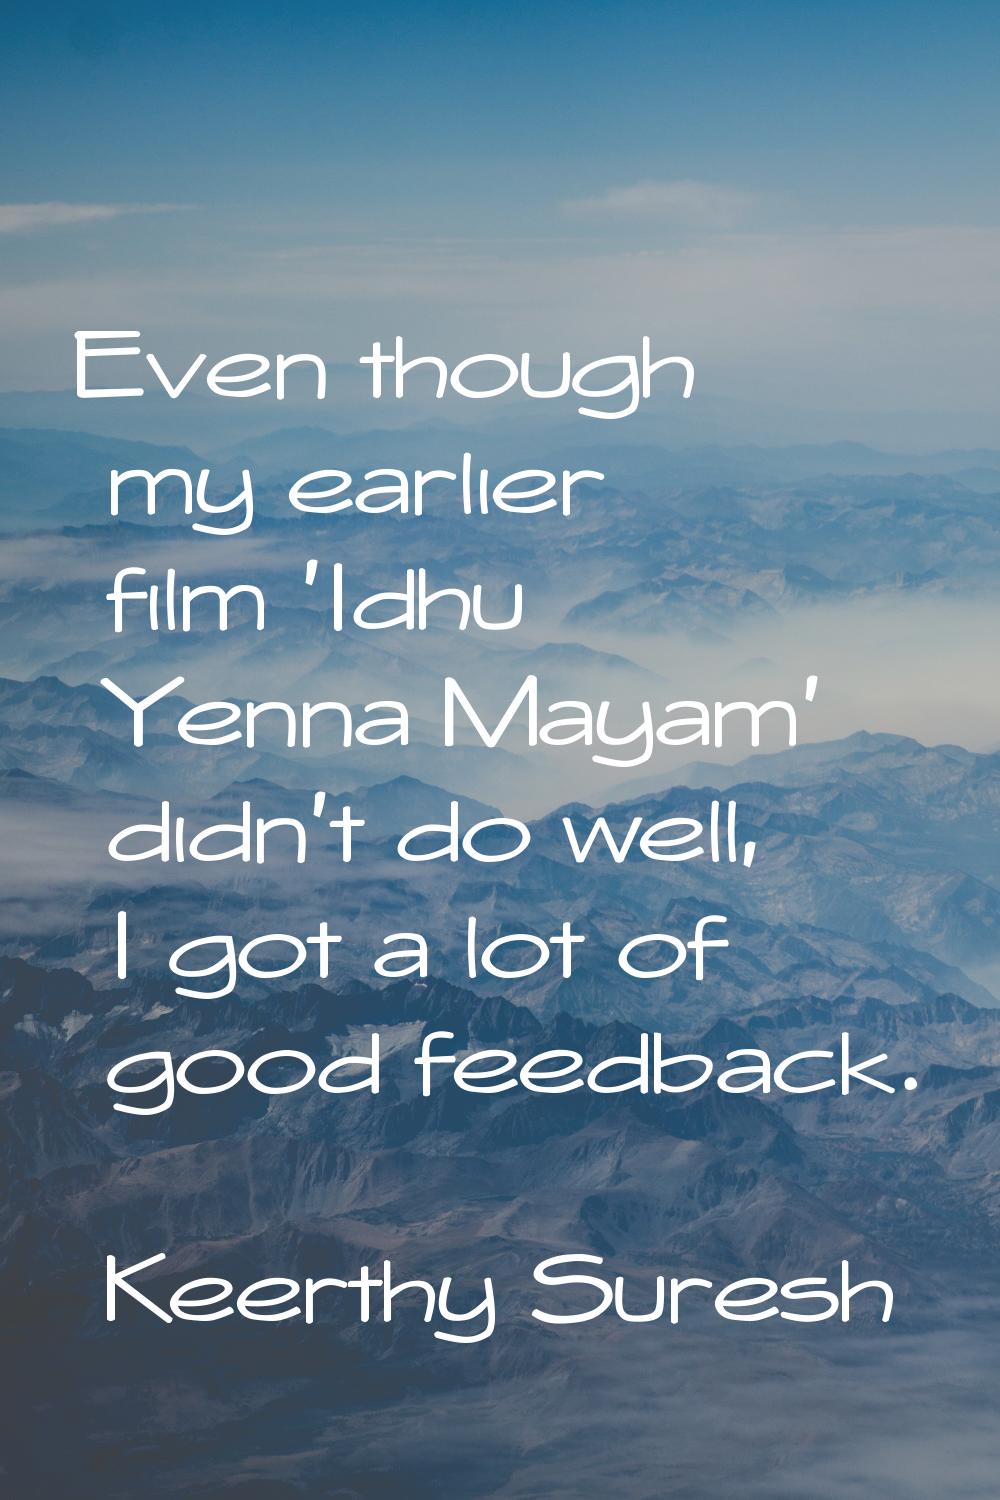 Even though my earlier film 'Idhu Yenna Mayam' didn't do well, I got a lot of good feedback.